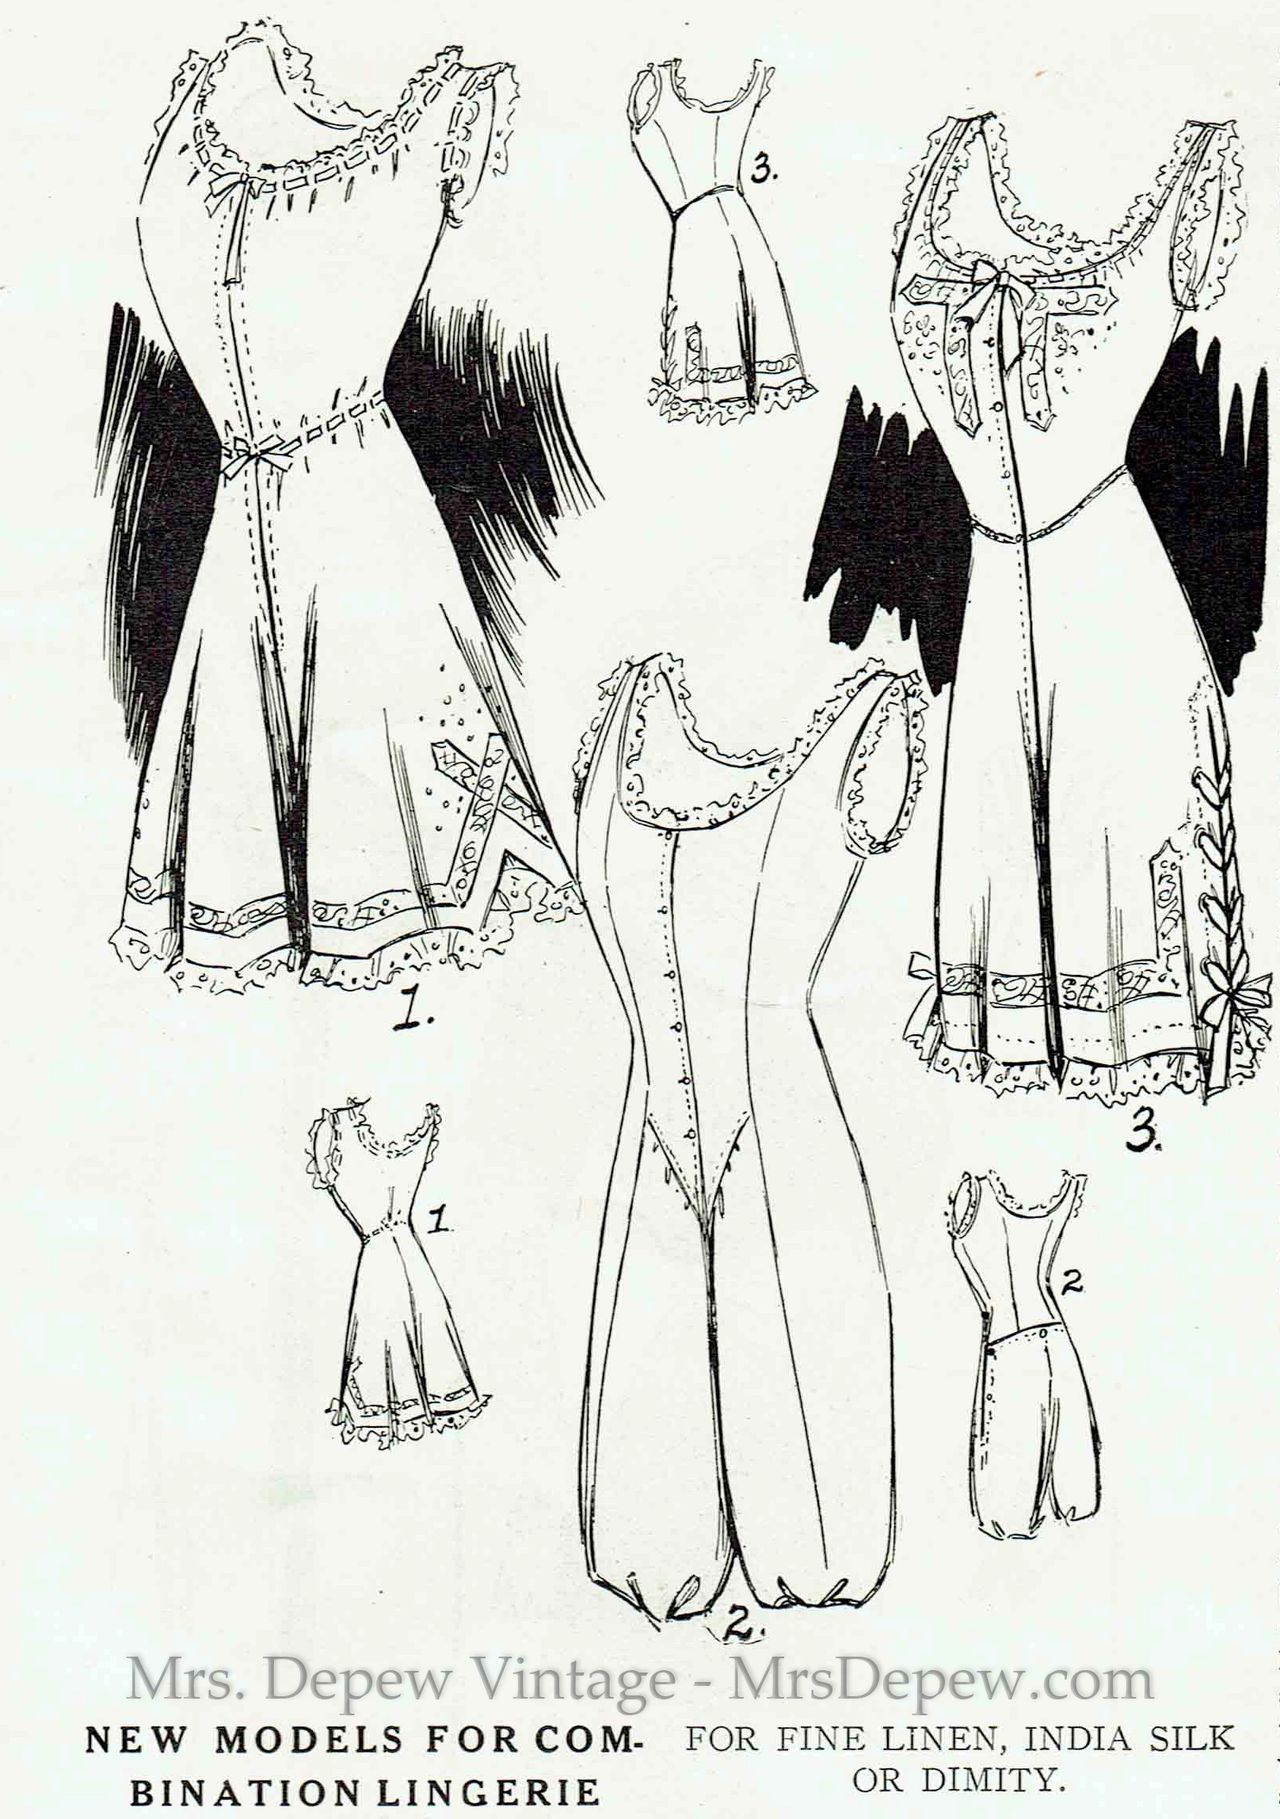 Vintage Sewing Pattern Ladies' 1920s Step-in and Bra #2030 Multi